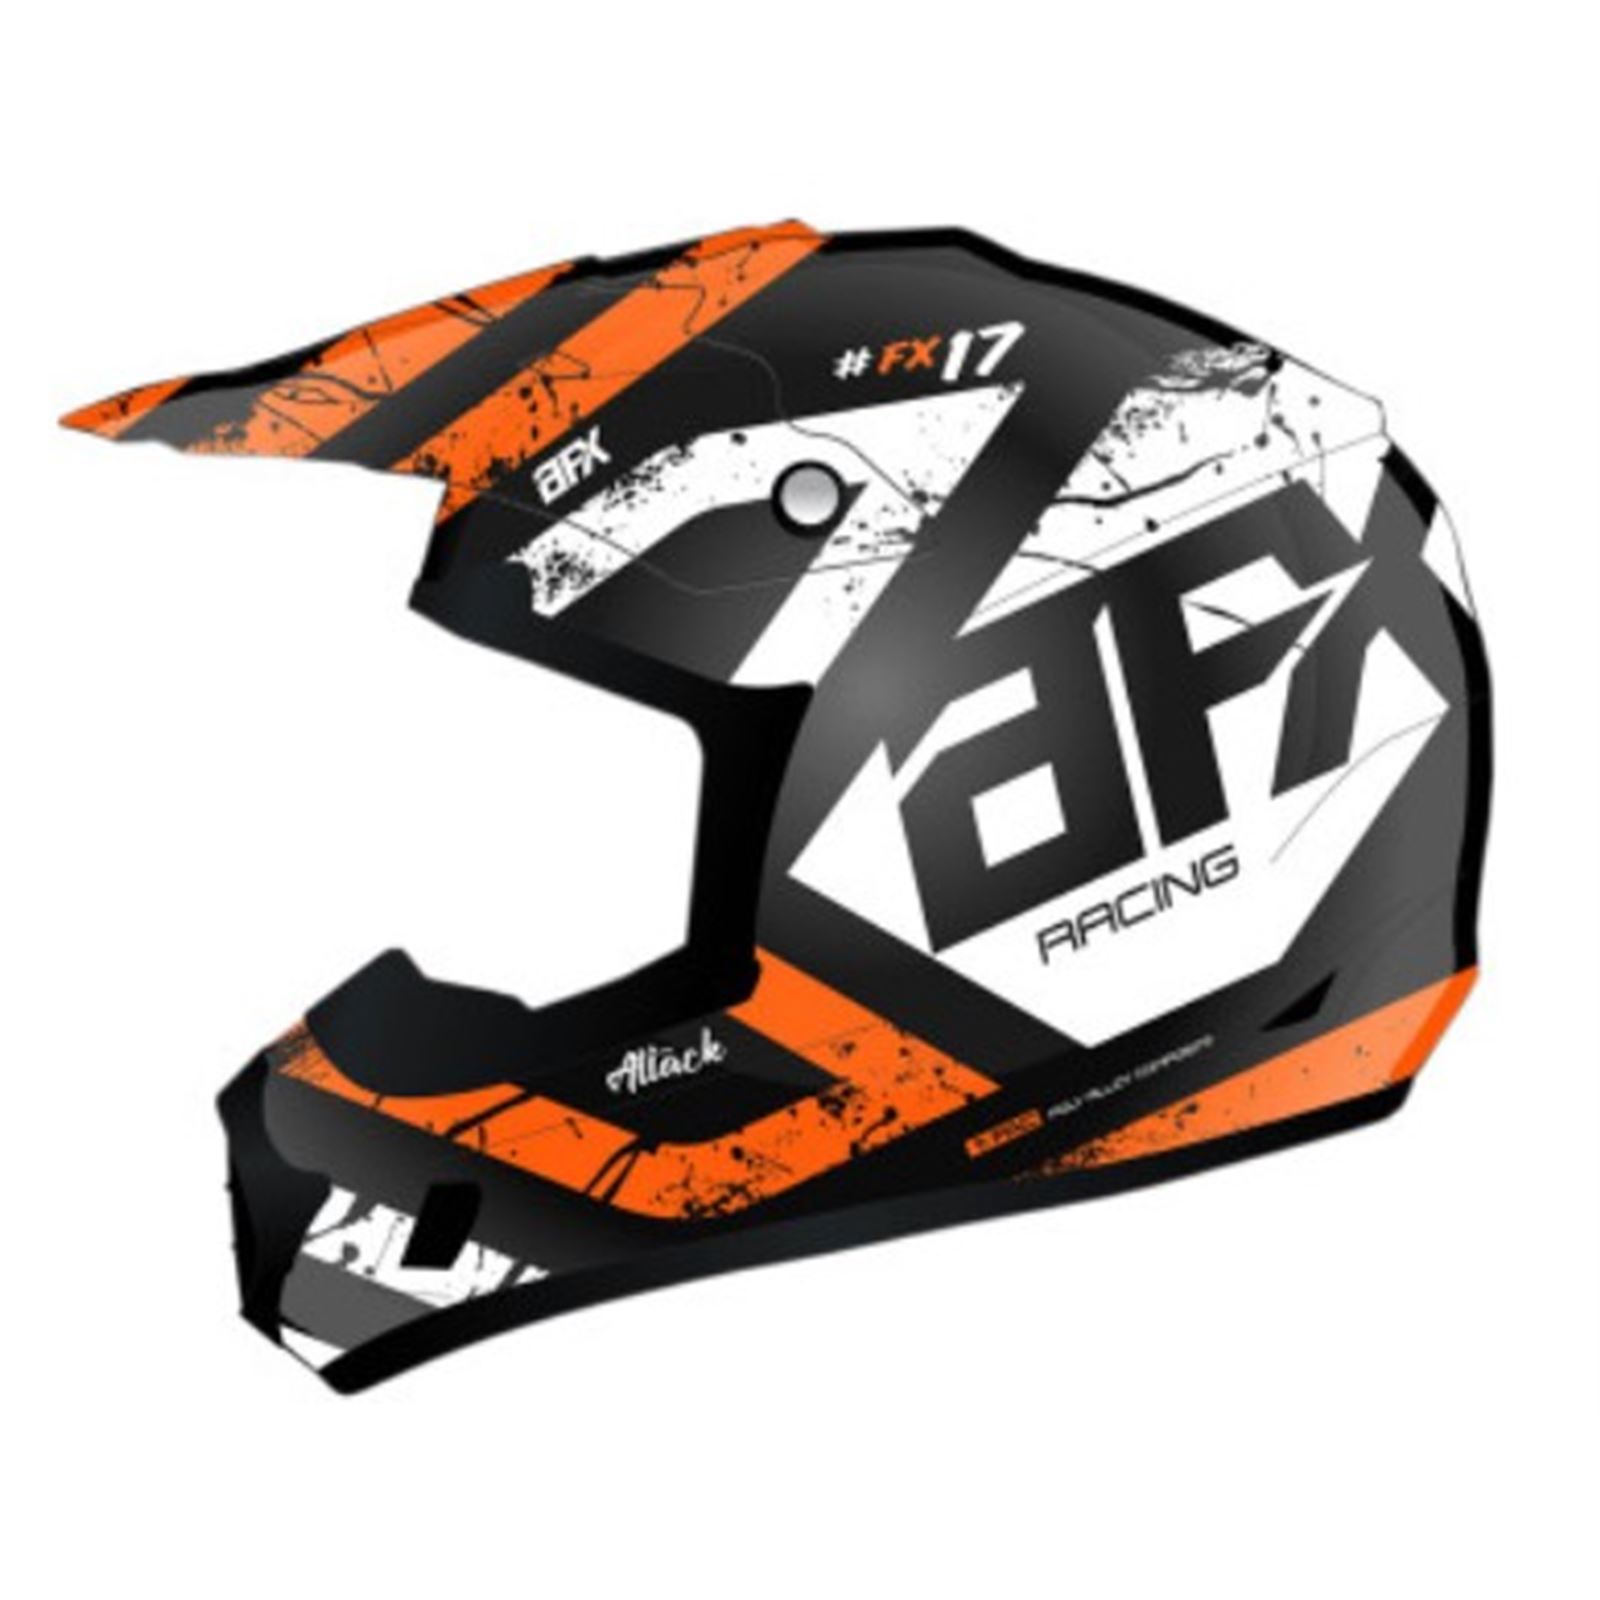 AFX FX-17 Helmet - Attack - Matte Black/Orange - X-Small